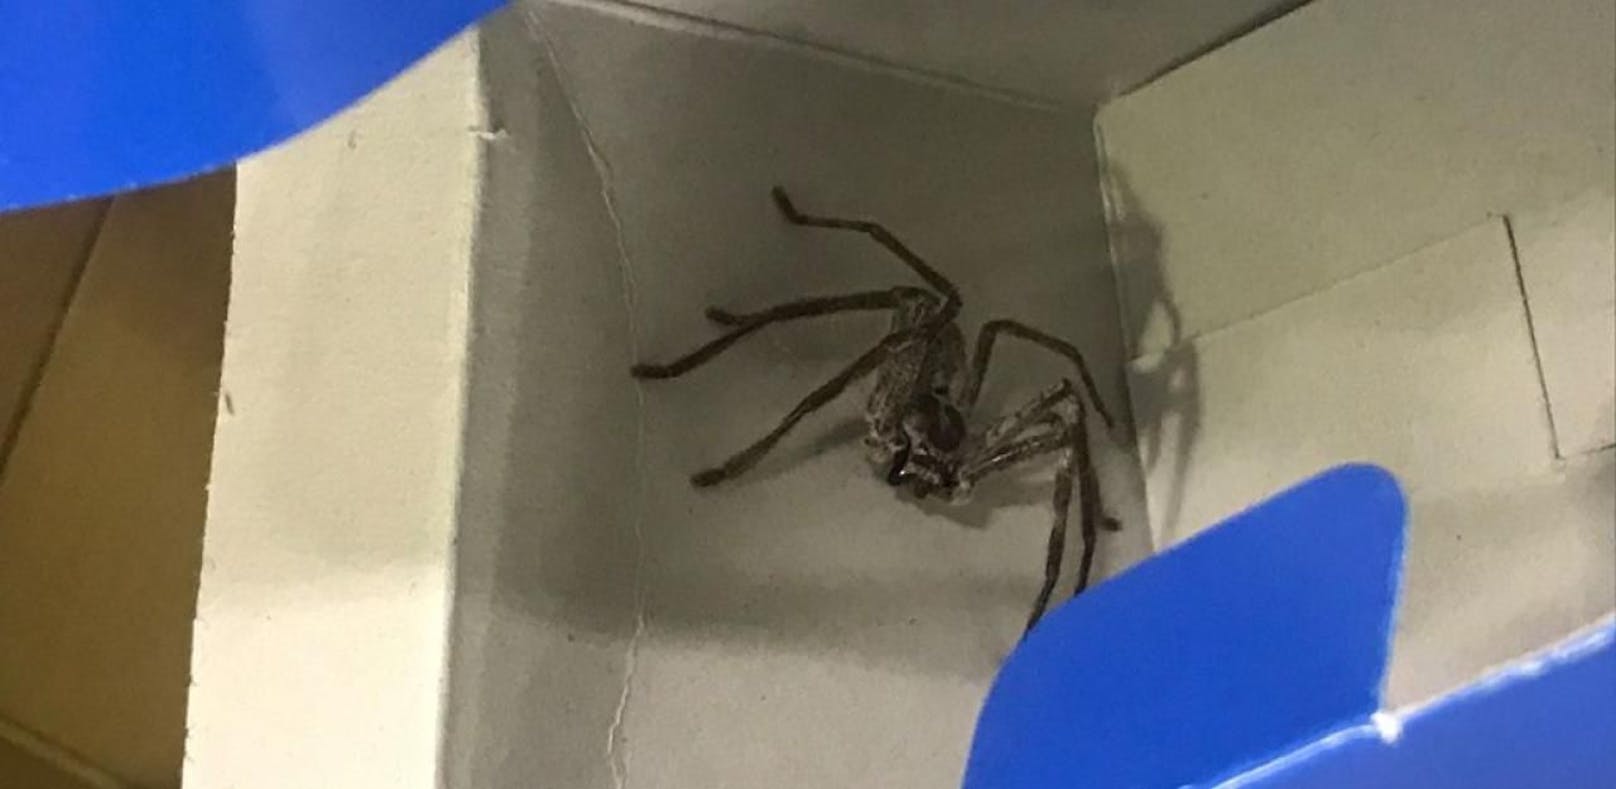 Fluggäste in Angst: Riesen-Spinne im Handgepäck